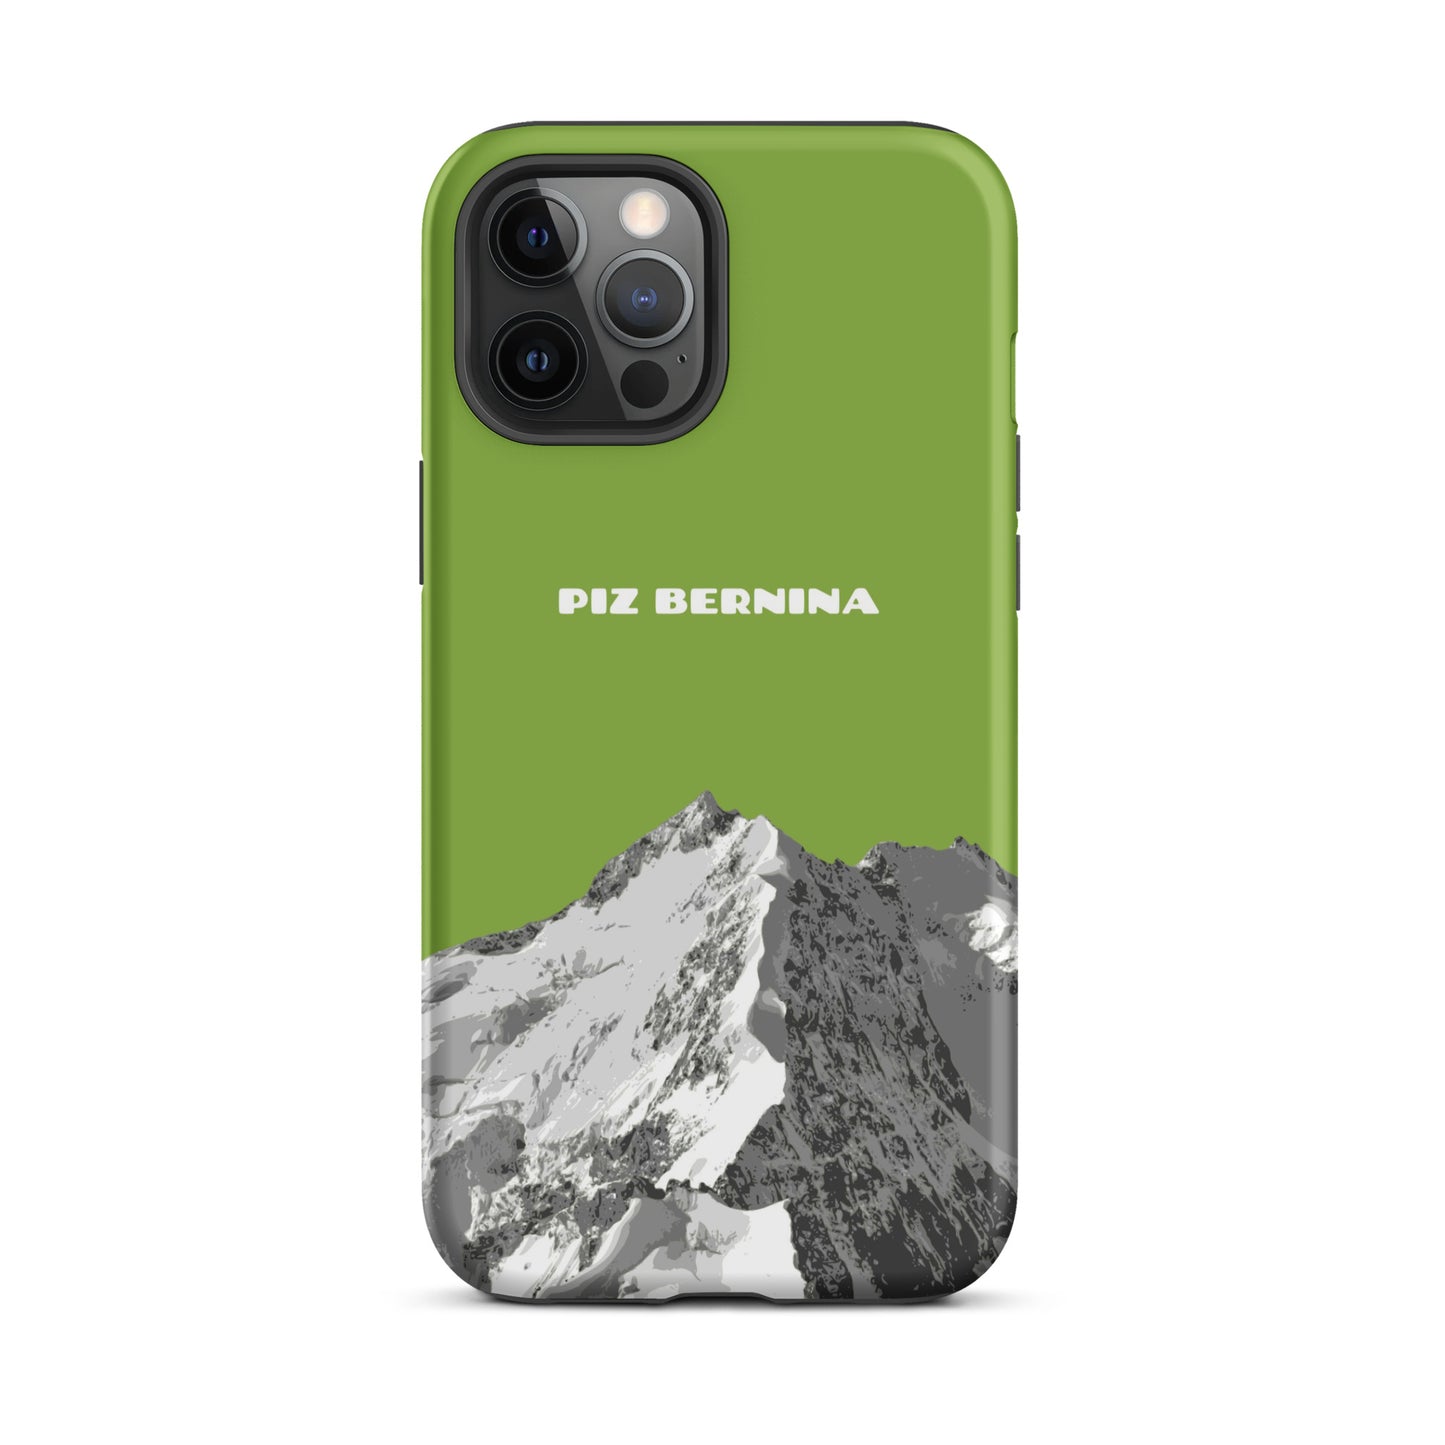 Hülle für das iPhone 12 Pro Max von Apple in der Farbe Gelbgrün, dass den Piz Bernina in Graubünden zeigt.